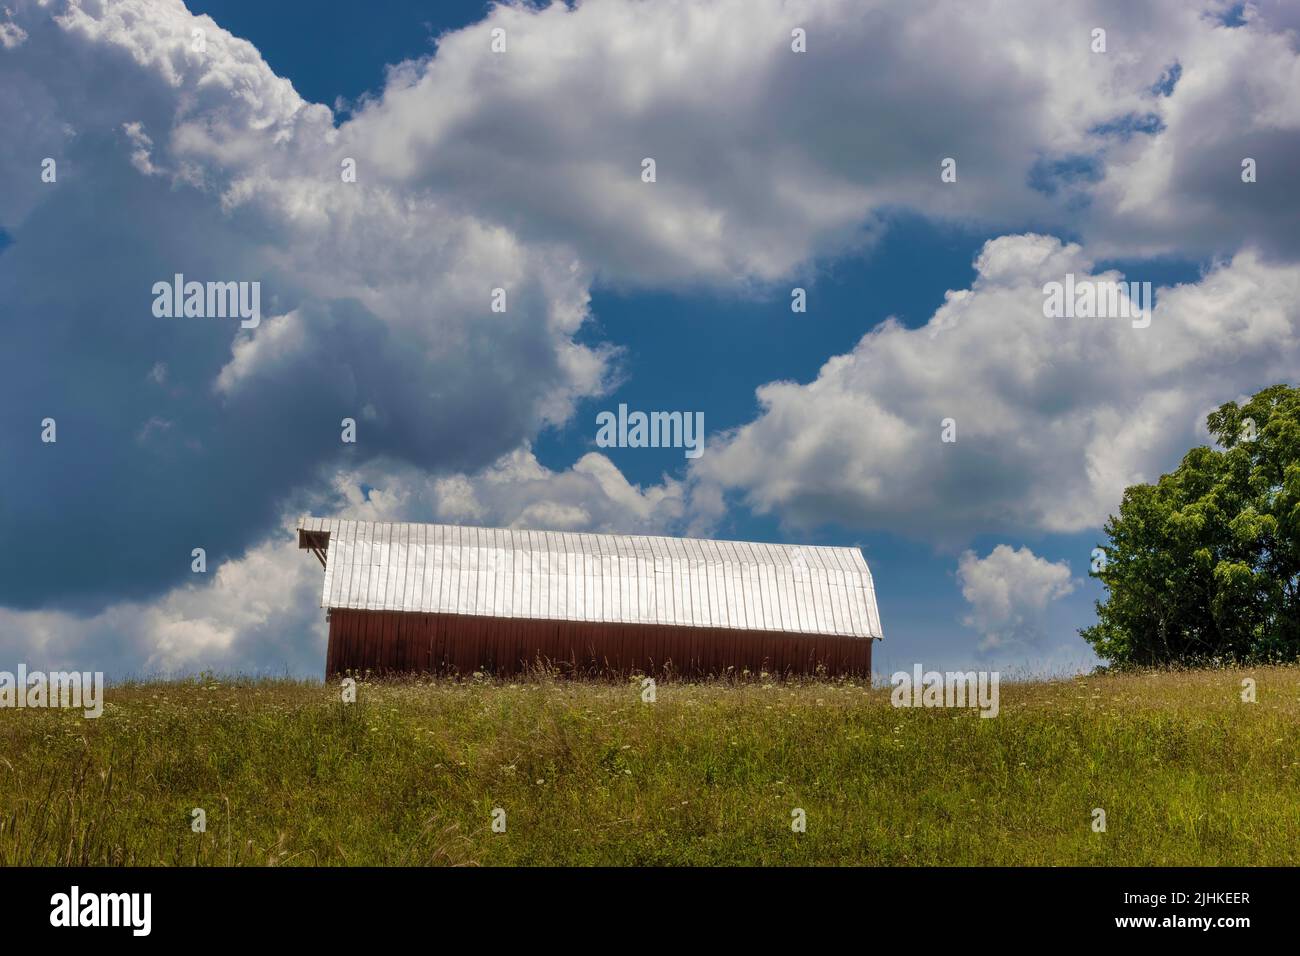 Granero en la cima de una colina bajo cielos nublados en el paisaje agrícola en Tennessee rural Foto de stock